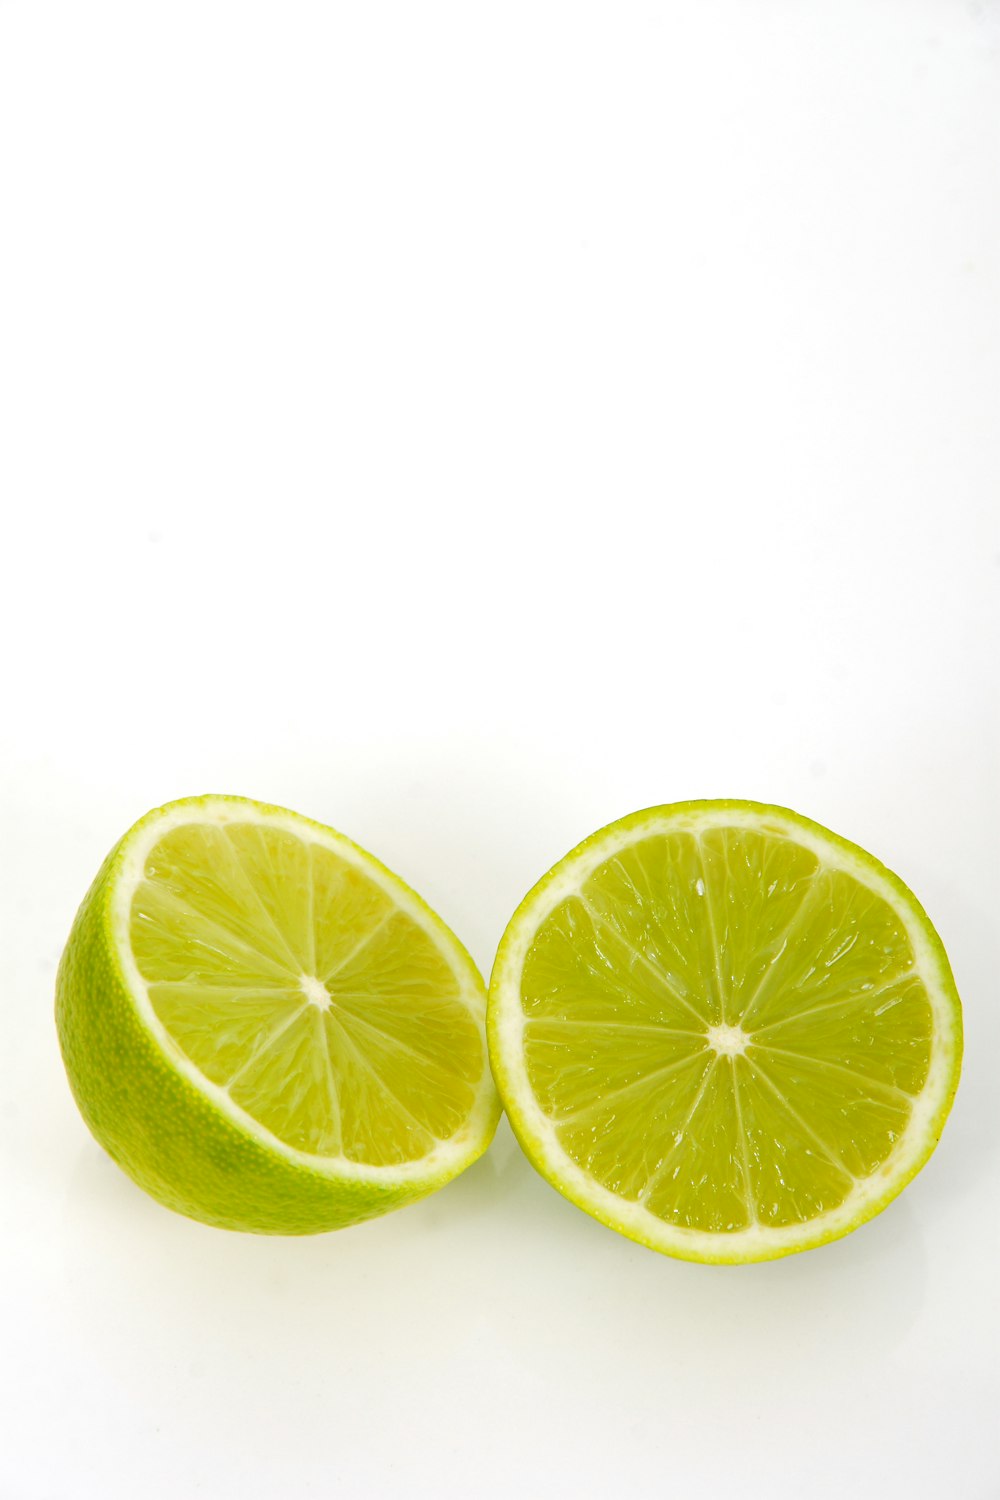 in Scheiben geschnittene Zitrone auf weißem Hintergrund